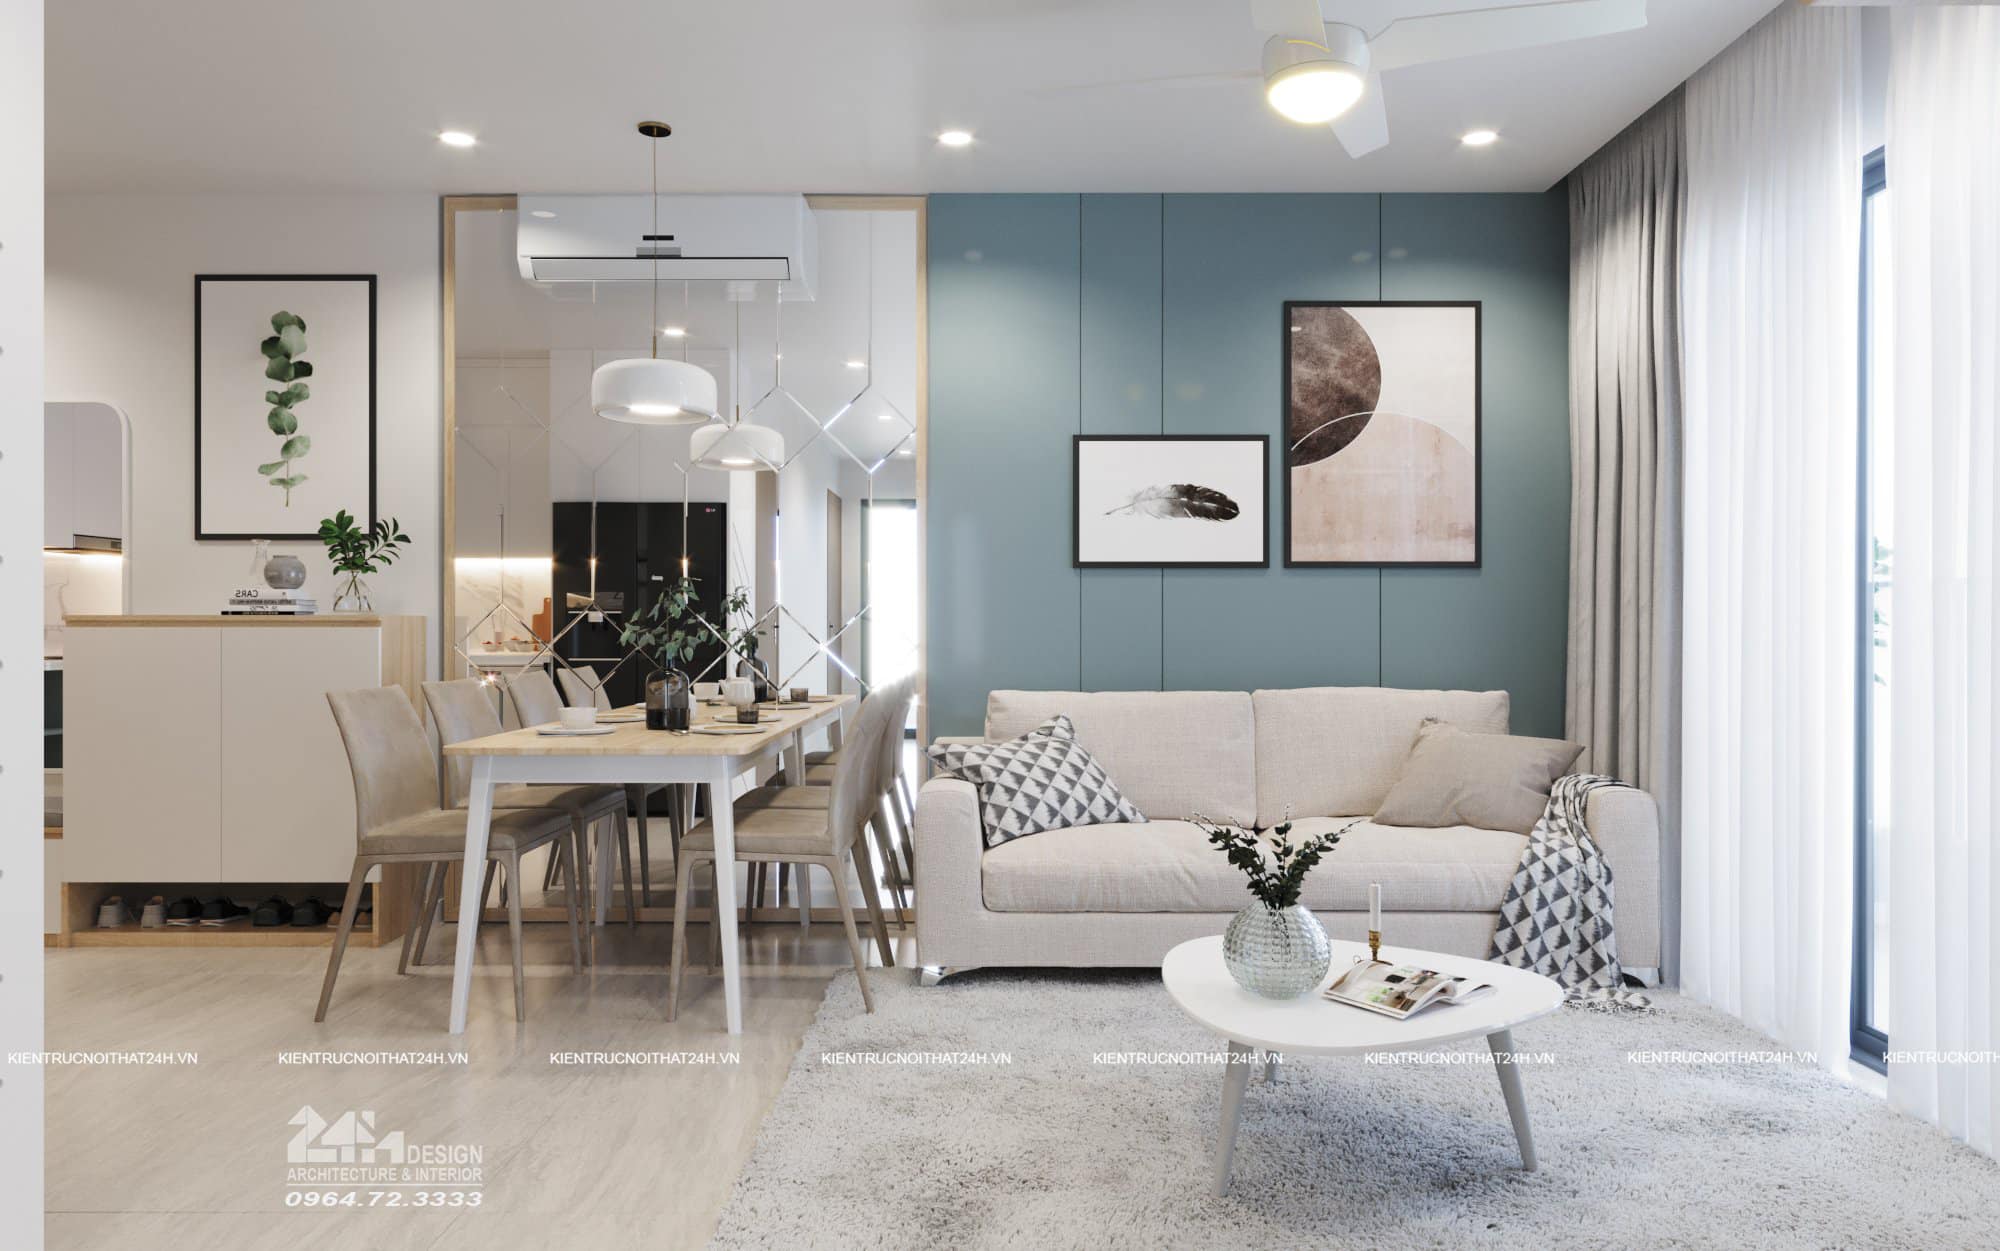 Top 50 mẫu thiết kế căn hộ vinhomes smart city đẹp nhất